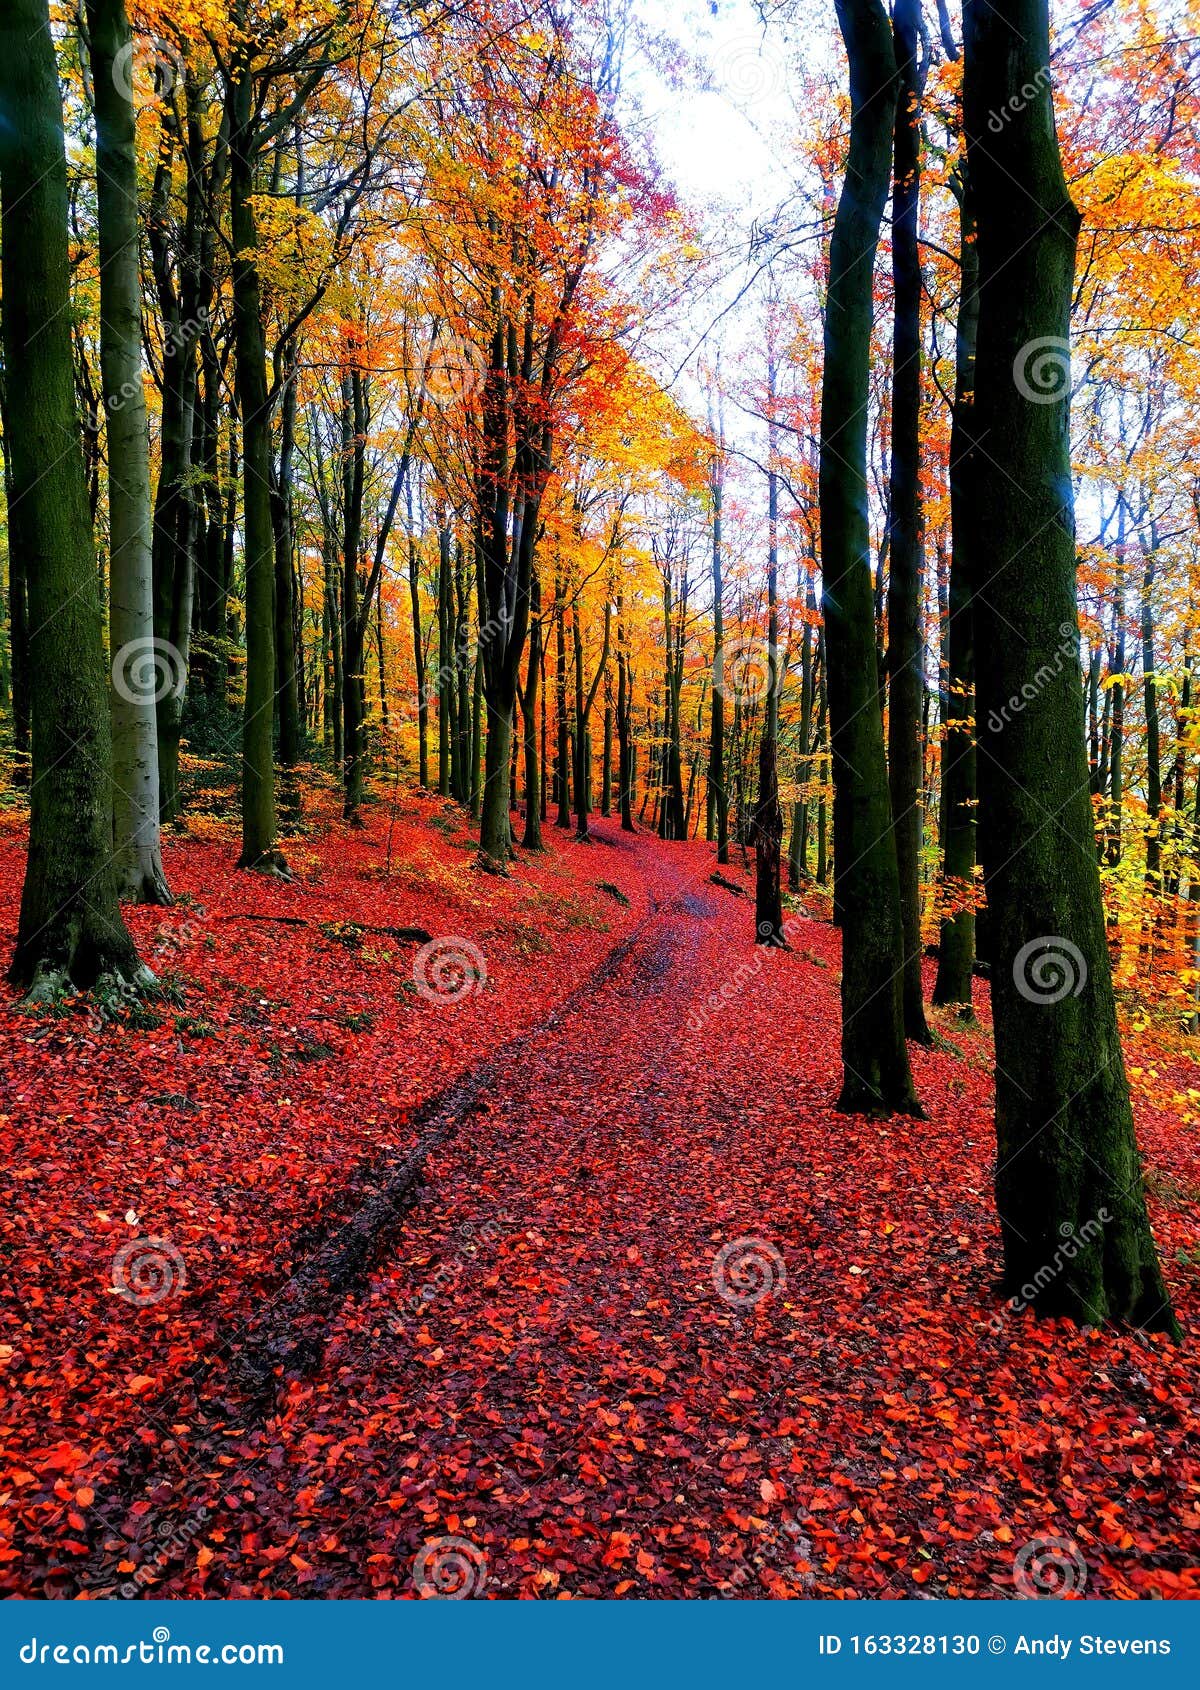 autumn walks colourful trees reds orange yellows